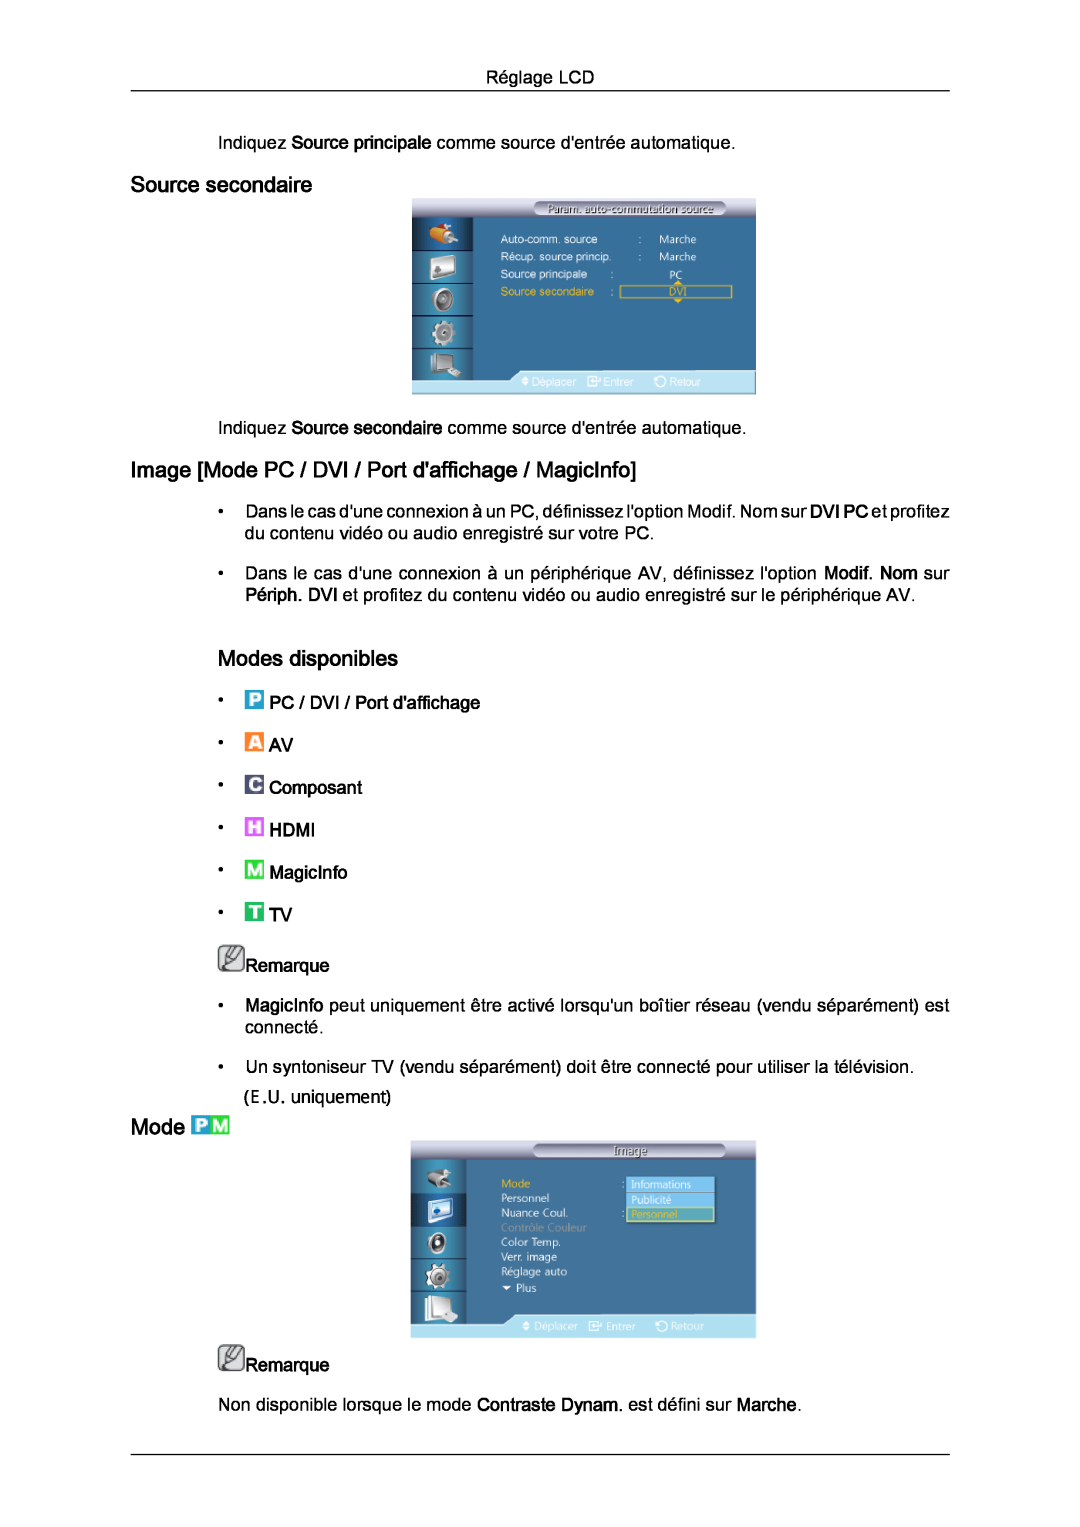 Samsung LH40CRPMBD/EN Source secondaire, Image Mode PC / DVI / Port daffichage / MagicInfo, Modes disponibles, Remarque 